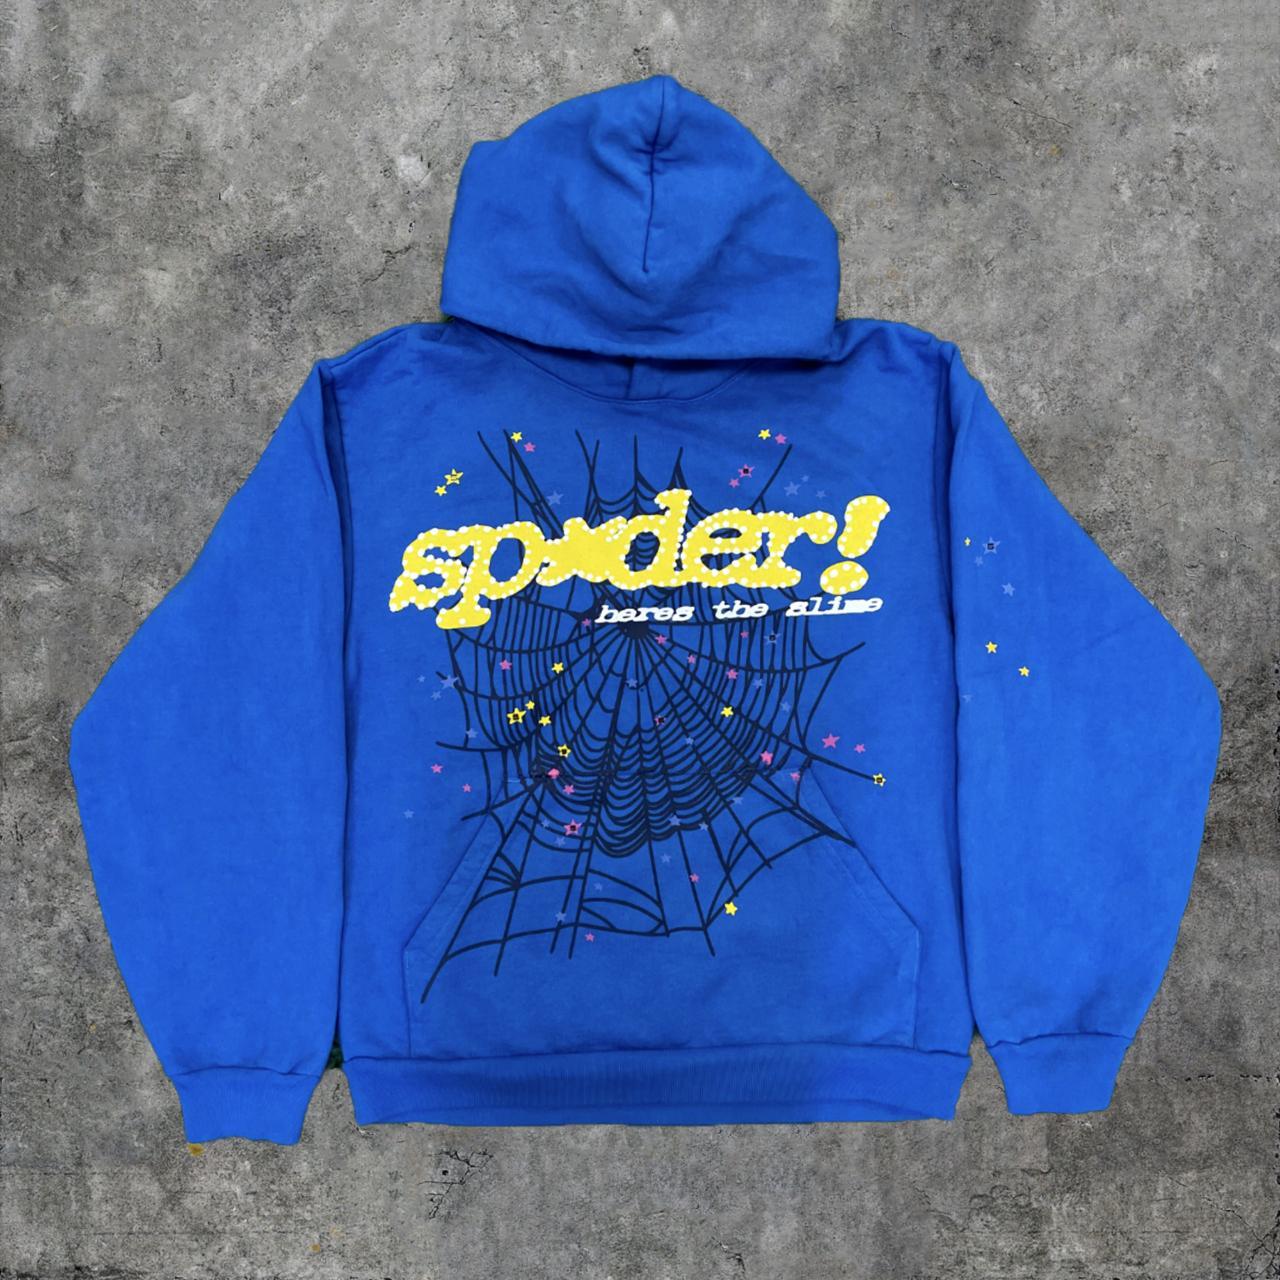 Sp5der TC Marina Blue Hoodie Sweatshirt | Spider... - Depop